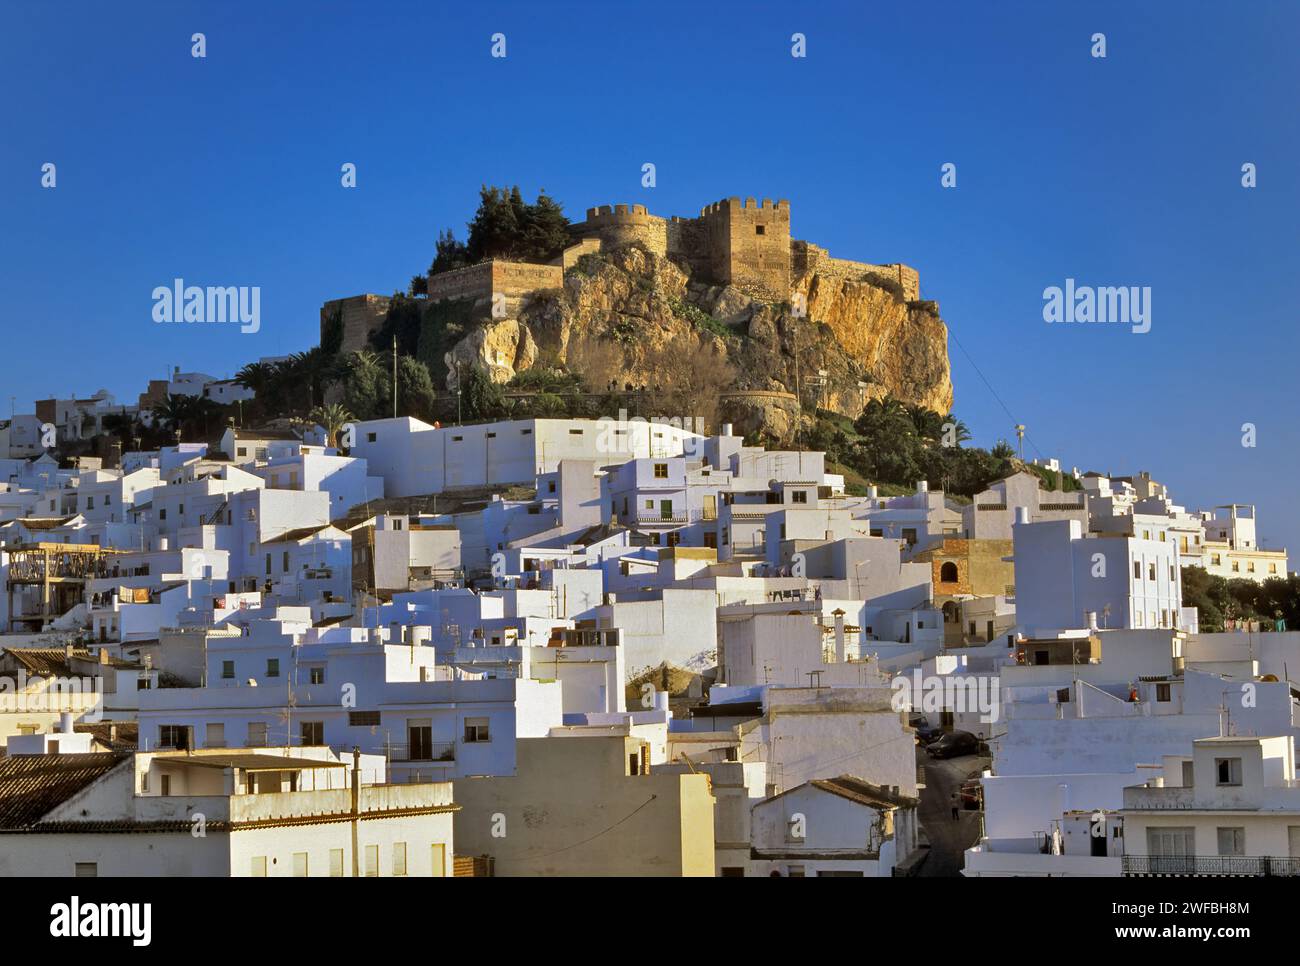 Castillo de Salobreña, Arab fortress, 10th century, over town of Salobrena, Costa Tropical, Granada province, Andalusia, Spain Stock Photo